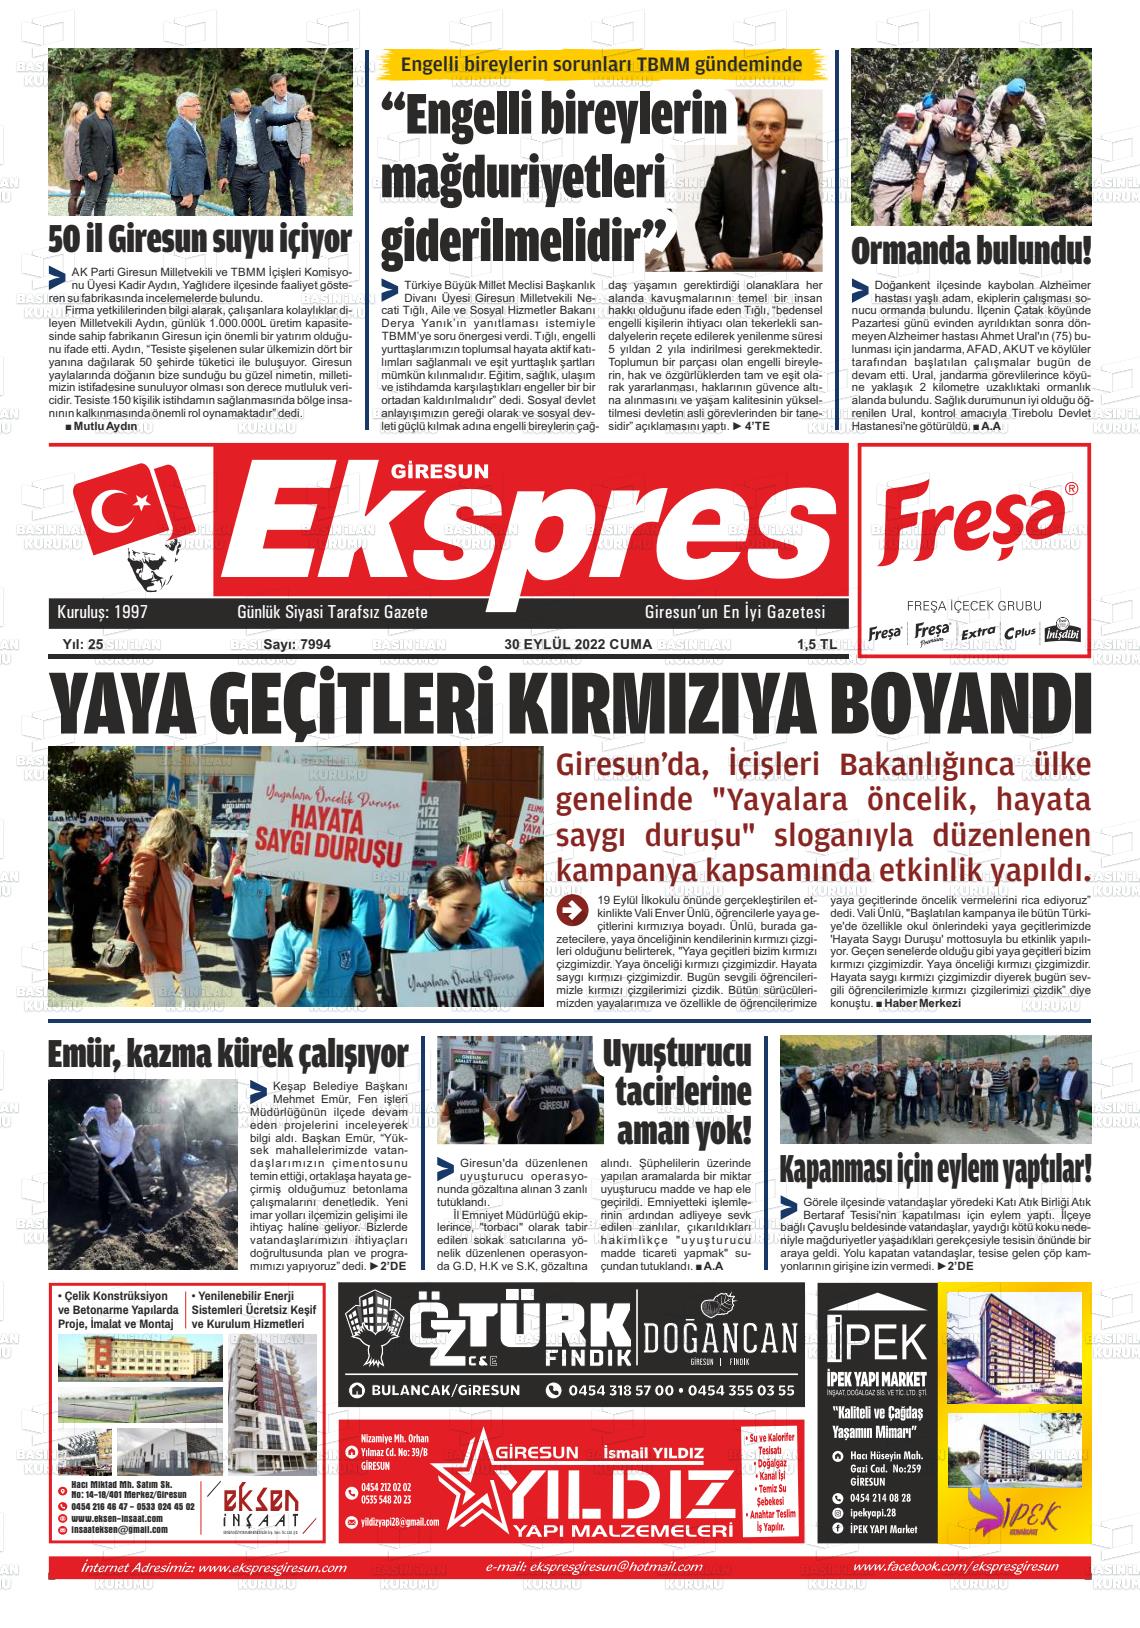 30 Eylül 2022 Giresun Ekspres Gazete Manşeti